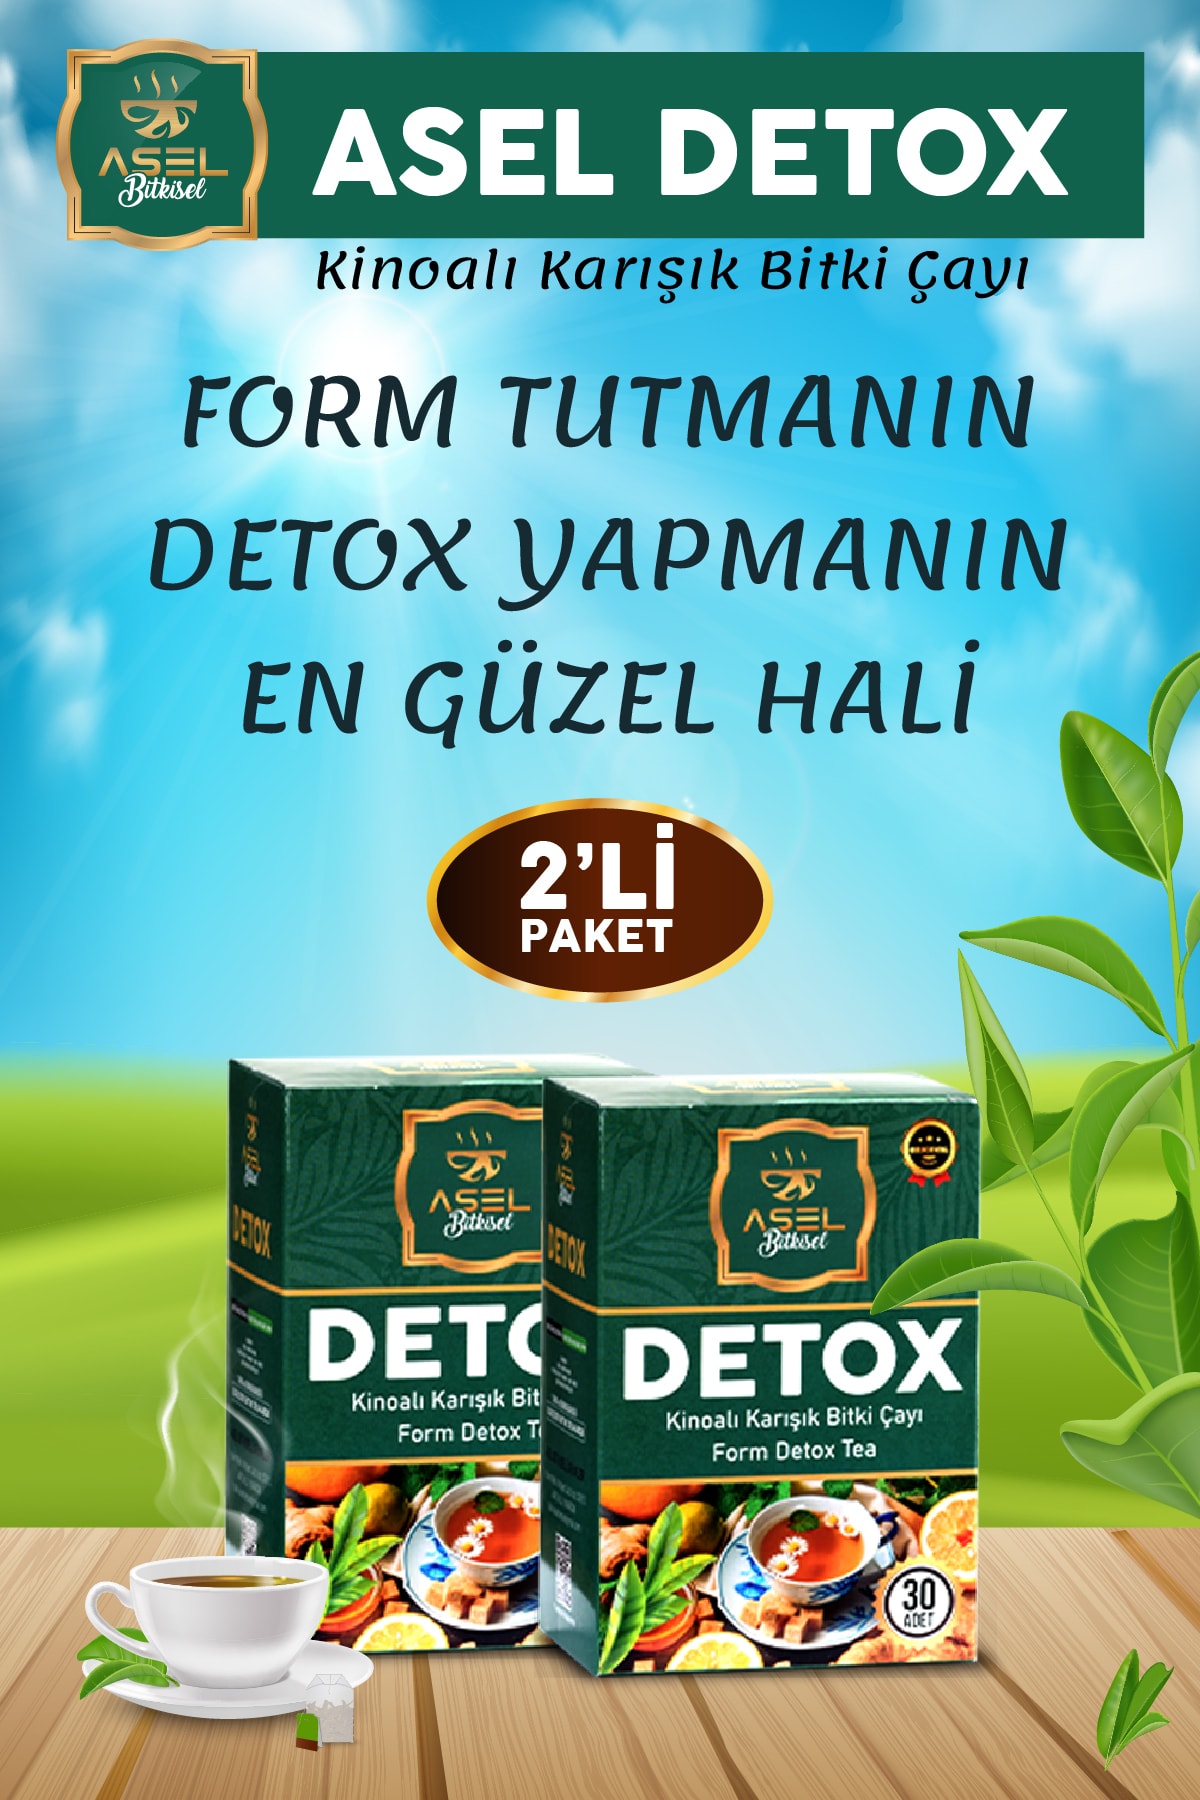 ASEL DETOX Bitki Çayı - Zayıflamaya Yardımcı Formda Kalmanın Sırrı - Detox Çay - Diyette Yardımcı ( 2’li Set )